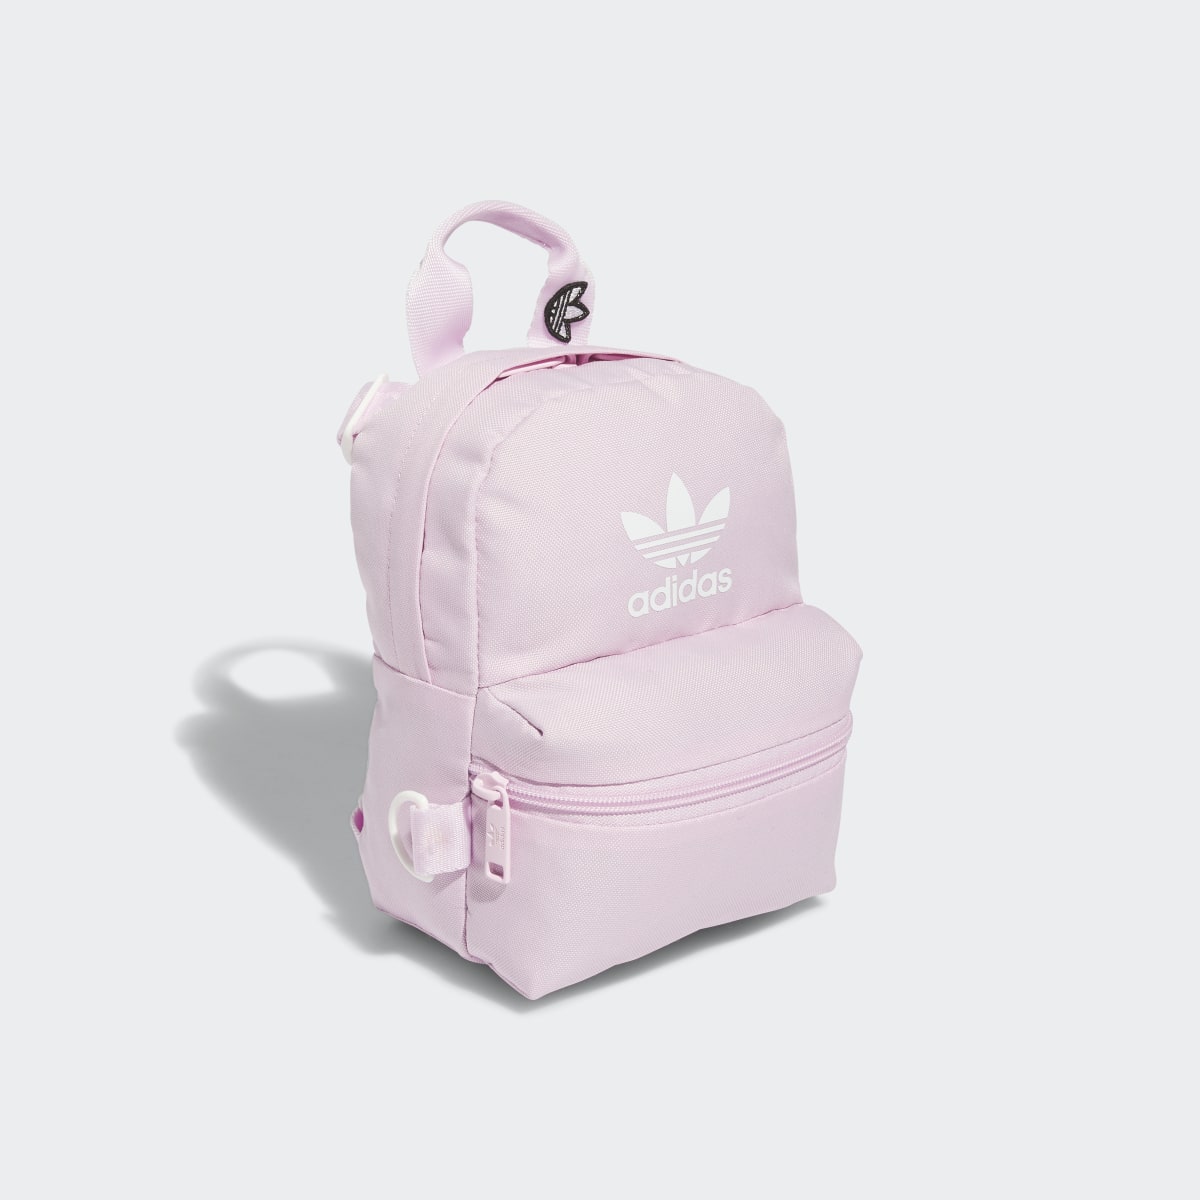 Adidas Trefoil 2.0 Mini Backpack. 4